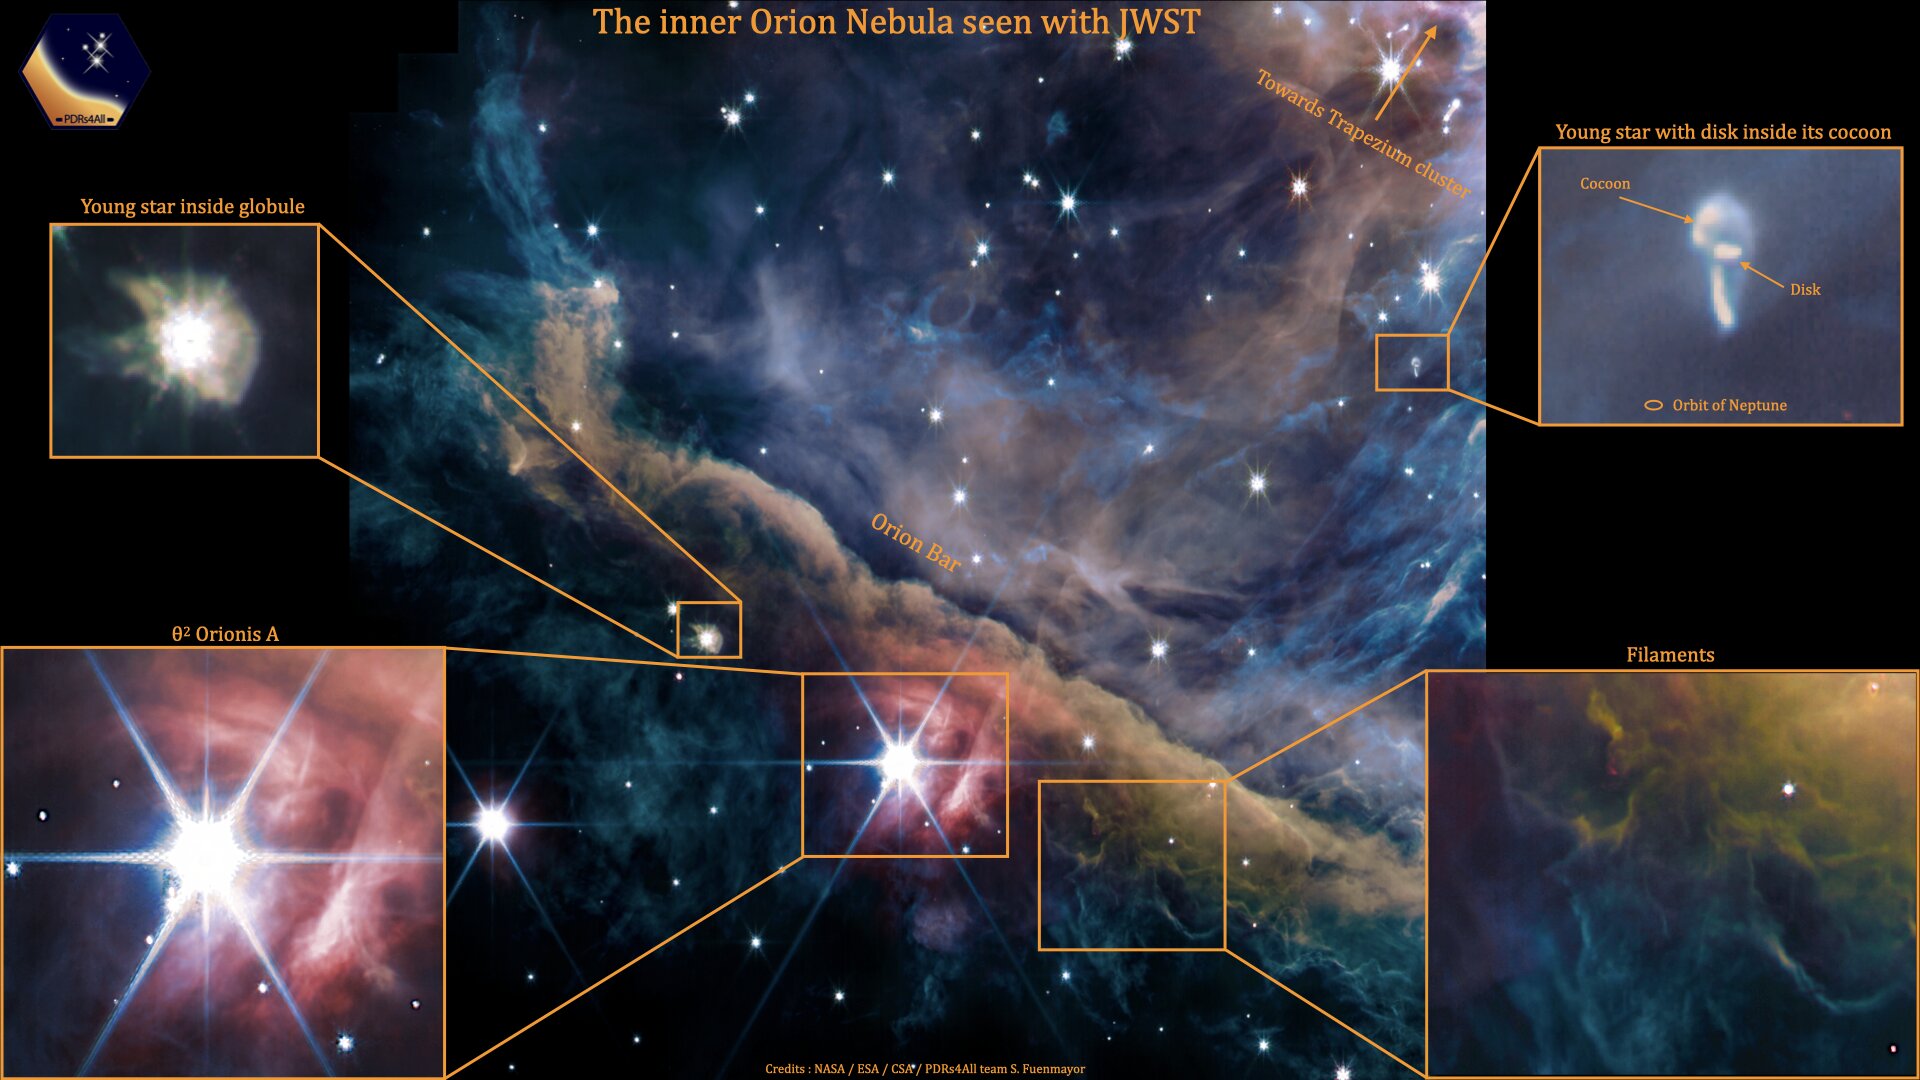 La nuova osservazione di Webb di Orion mostra un'immagine composita multi-filtro raffigurante emissioni di gas ionizzato, idrocarburi, gas molecolare, polvere e luce stellare diffusa (NASA)